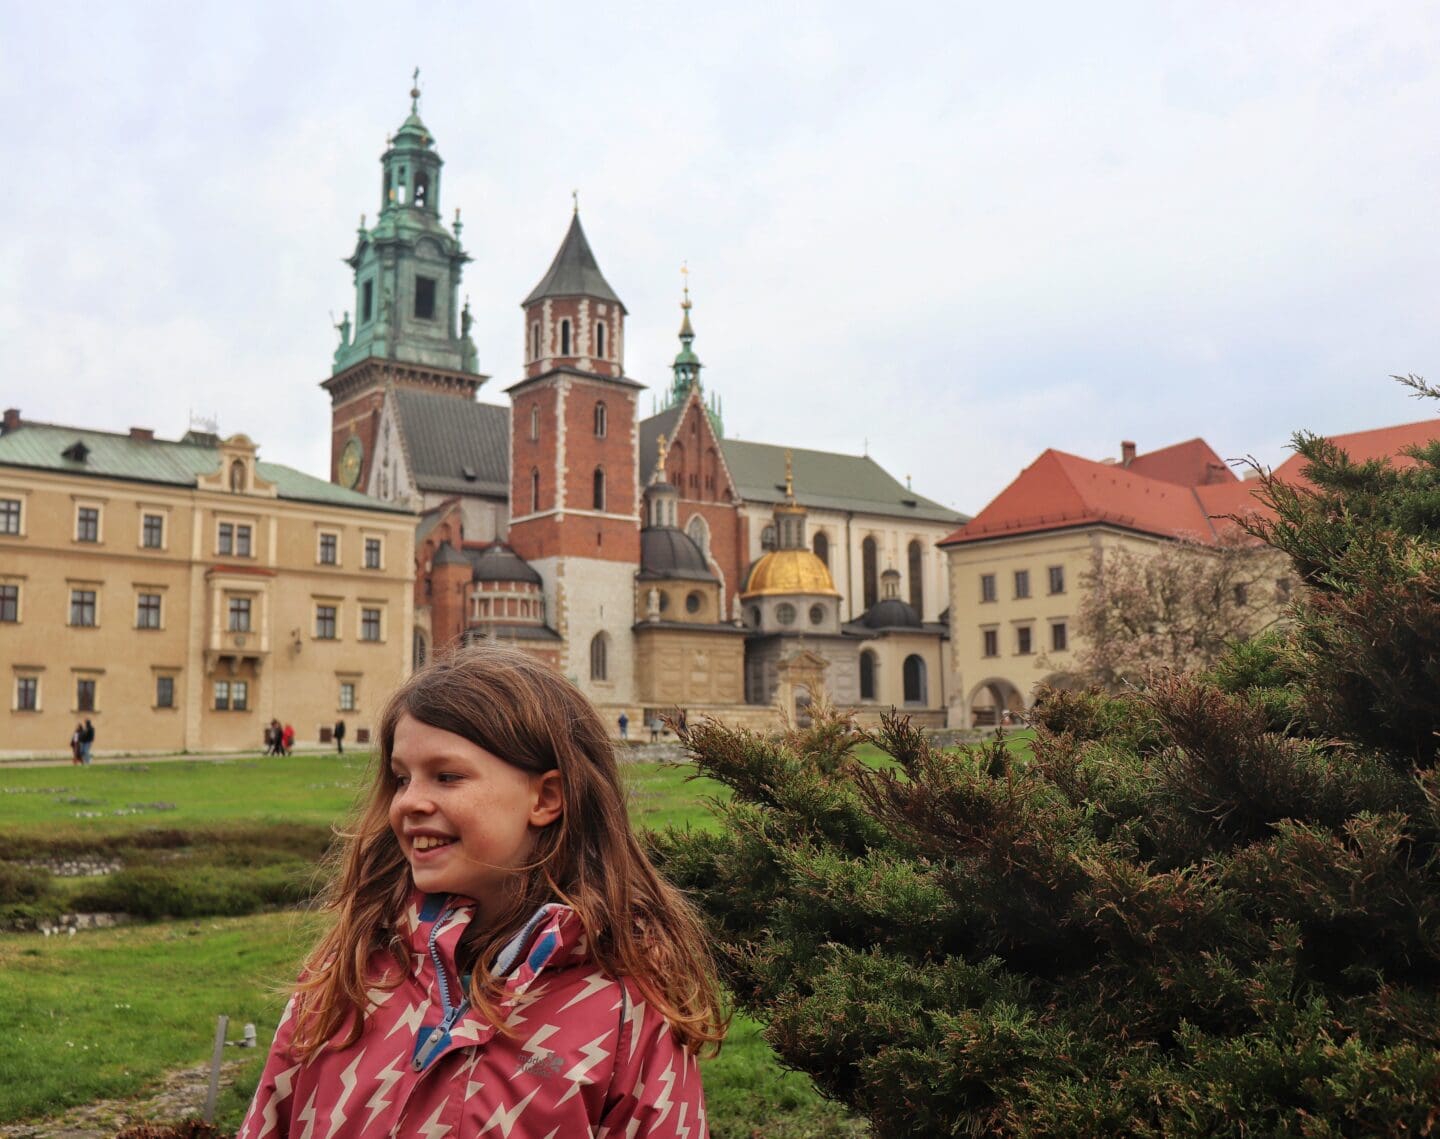 Wawel castle Krakow